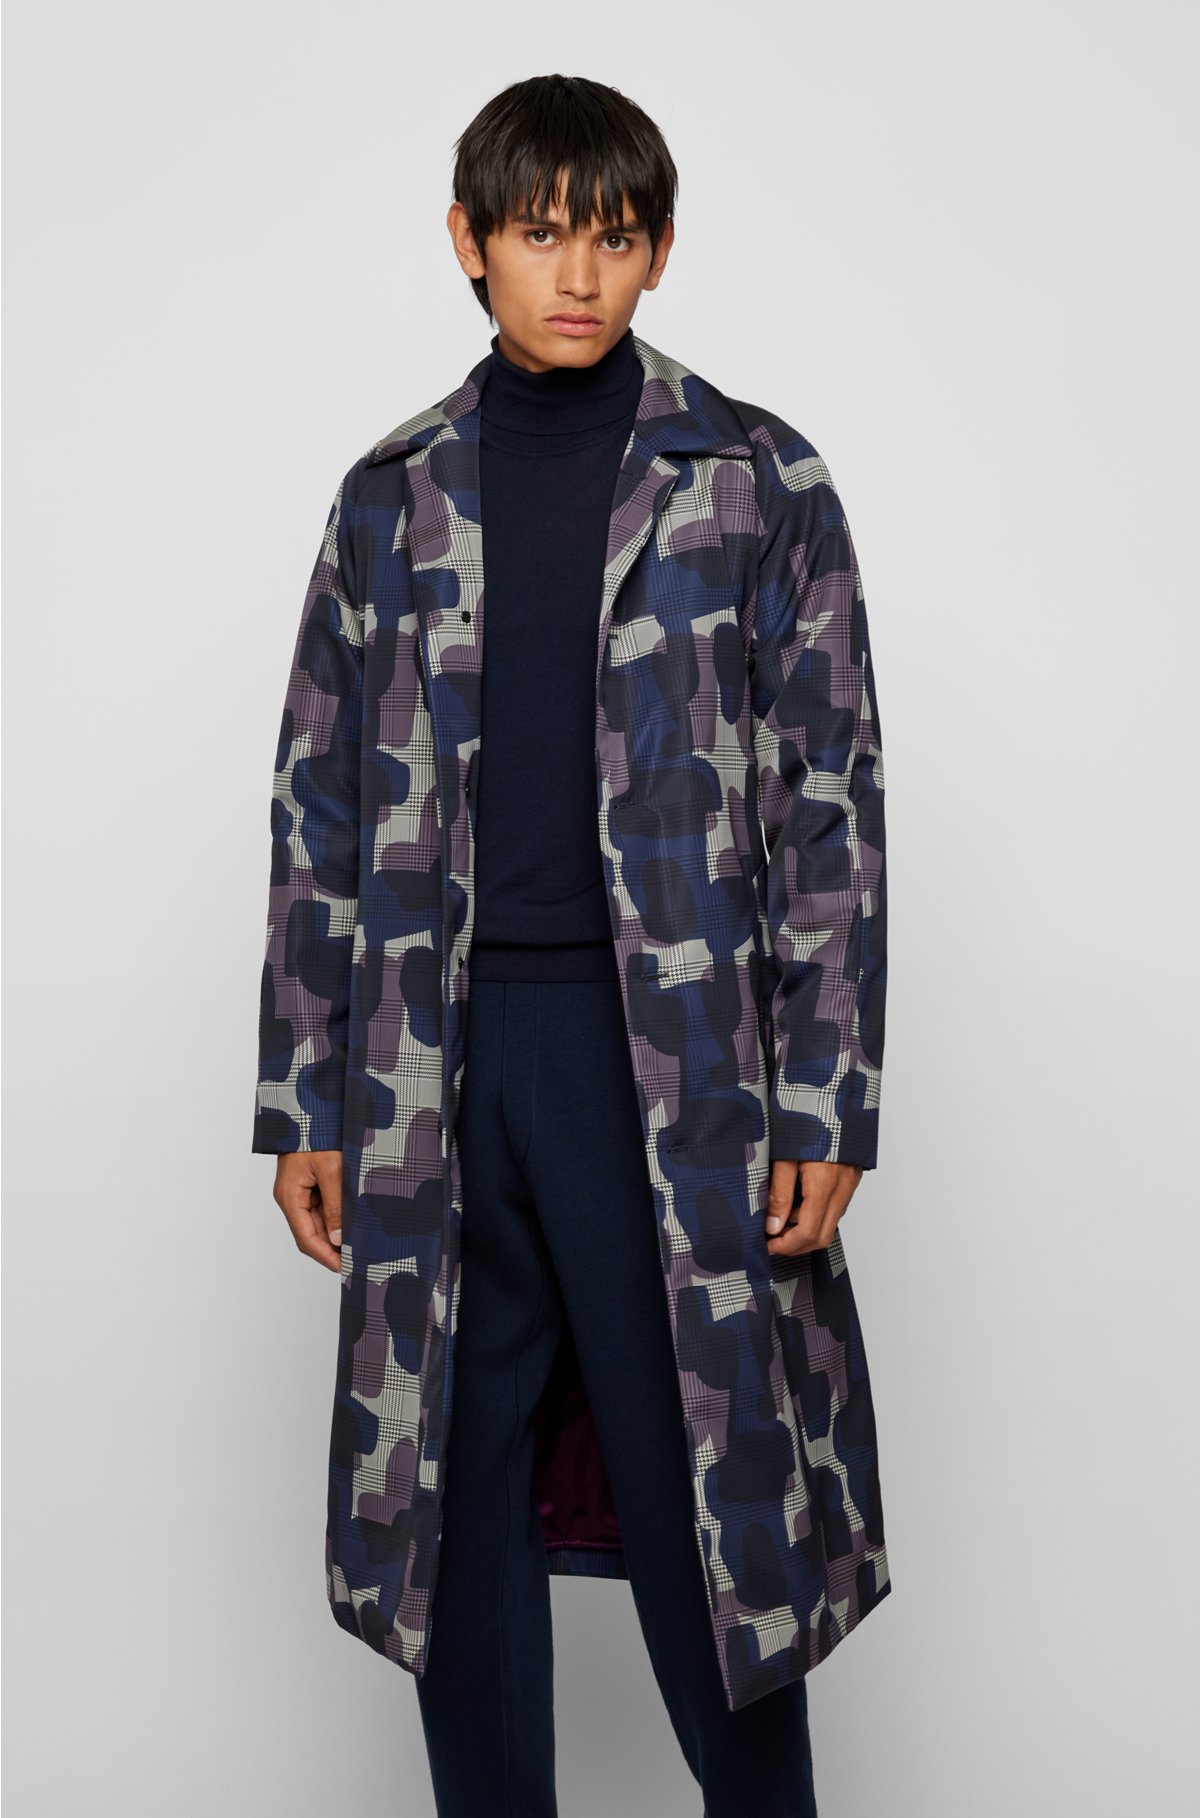 Las mejores ofertas en Rompevientos Louis Vuitton abrigos